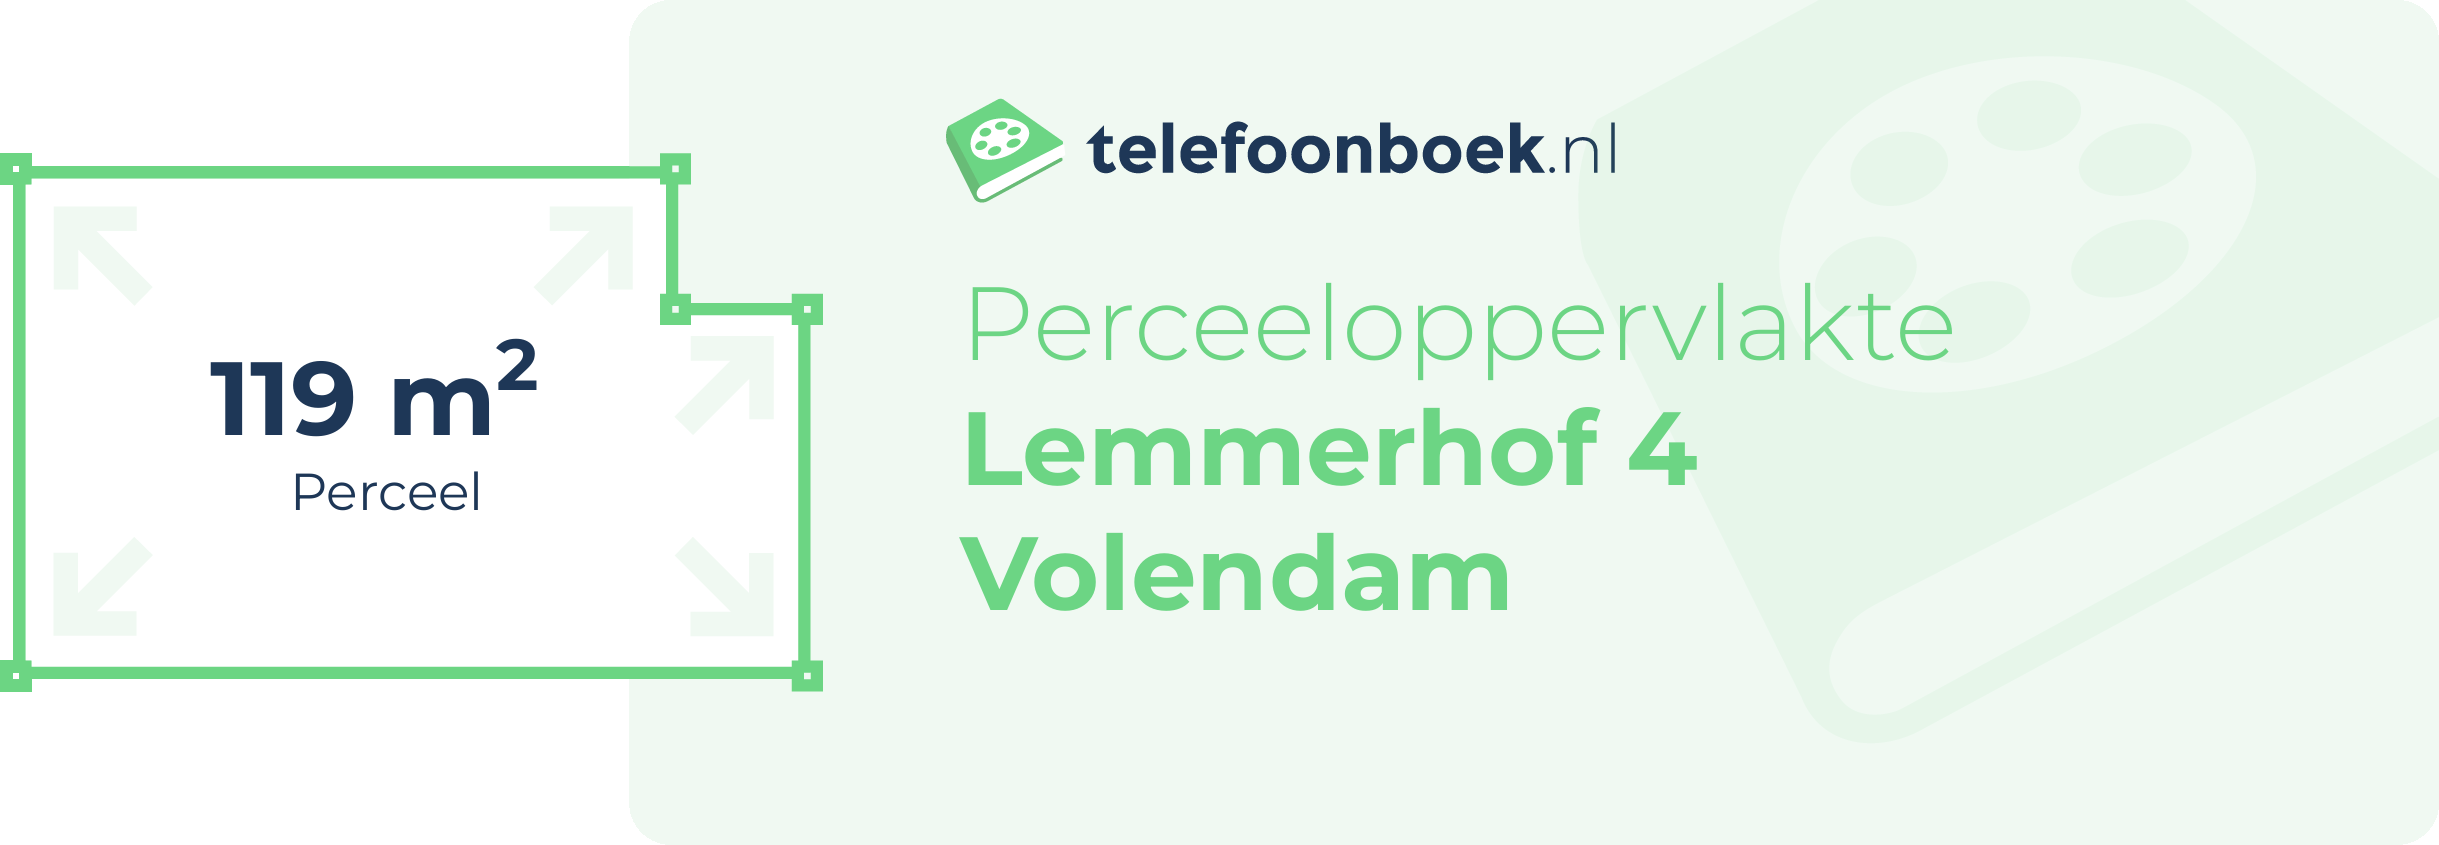 Perceeloppervlakte Lemmerhof 4 Volendam